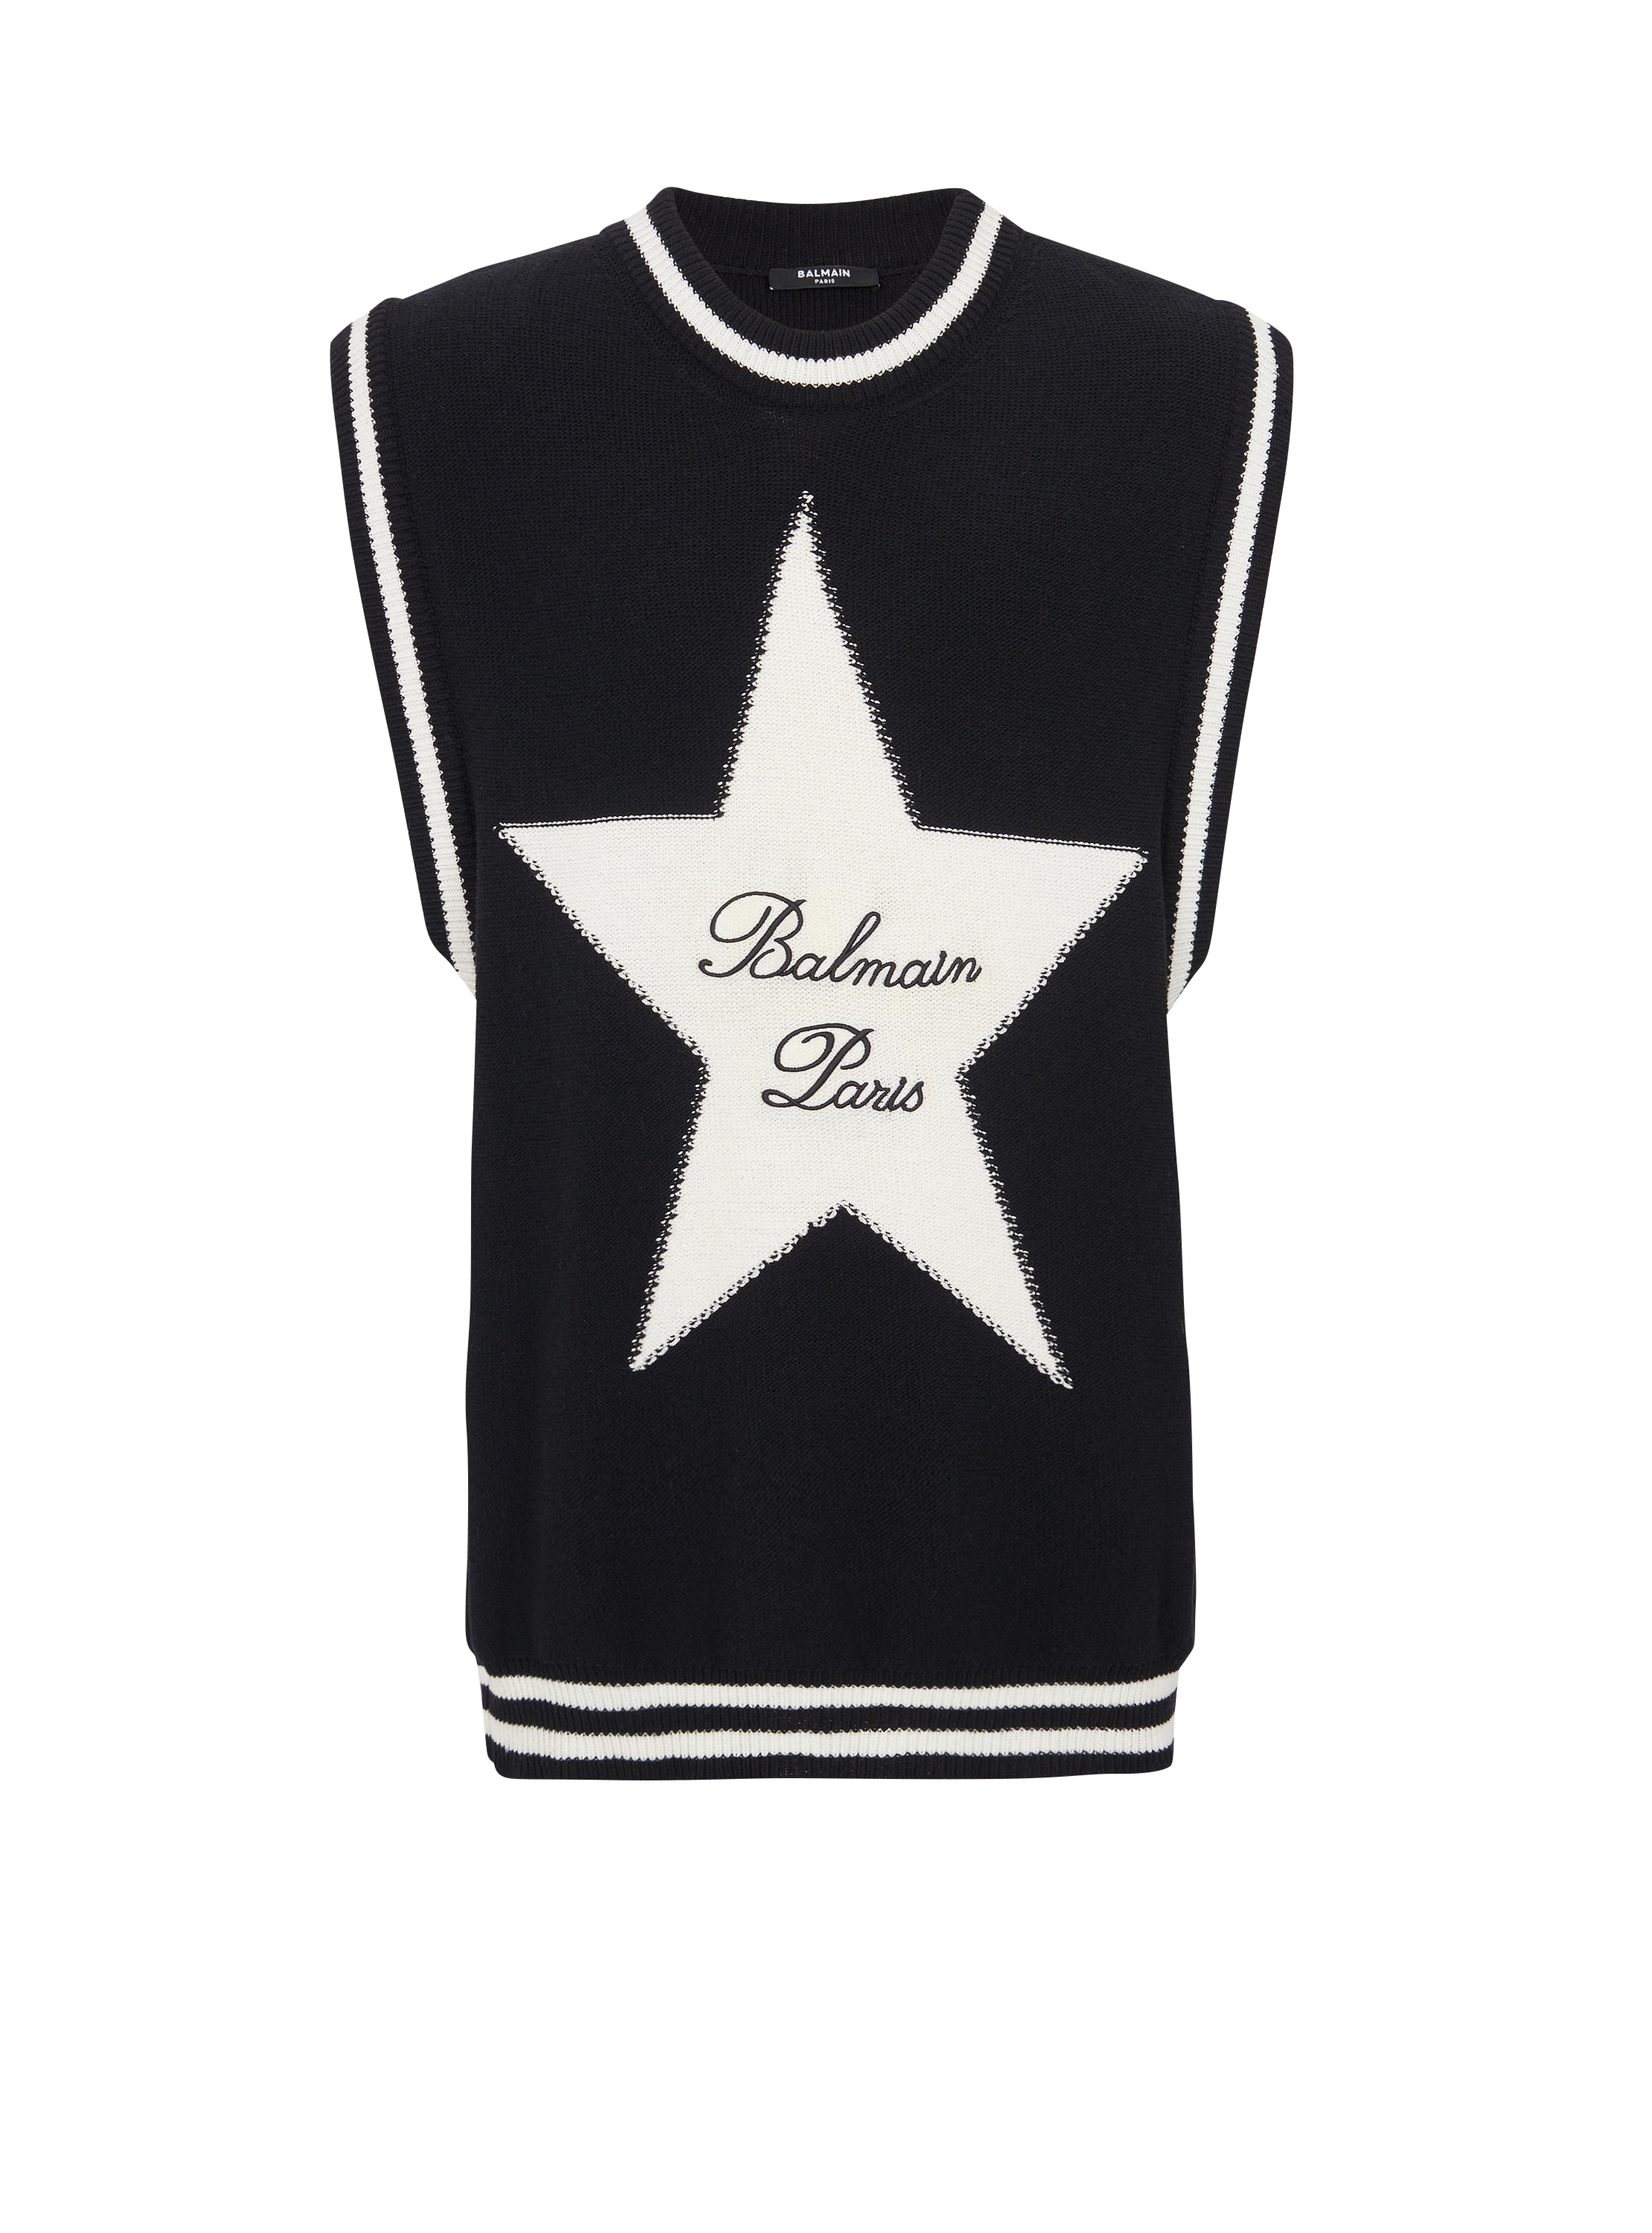 Balmain Signature star jumper, black, hi-res